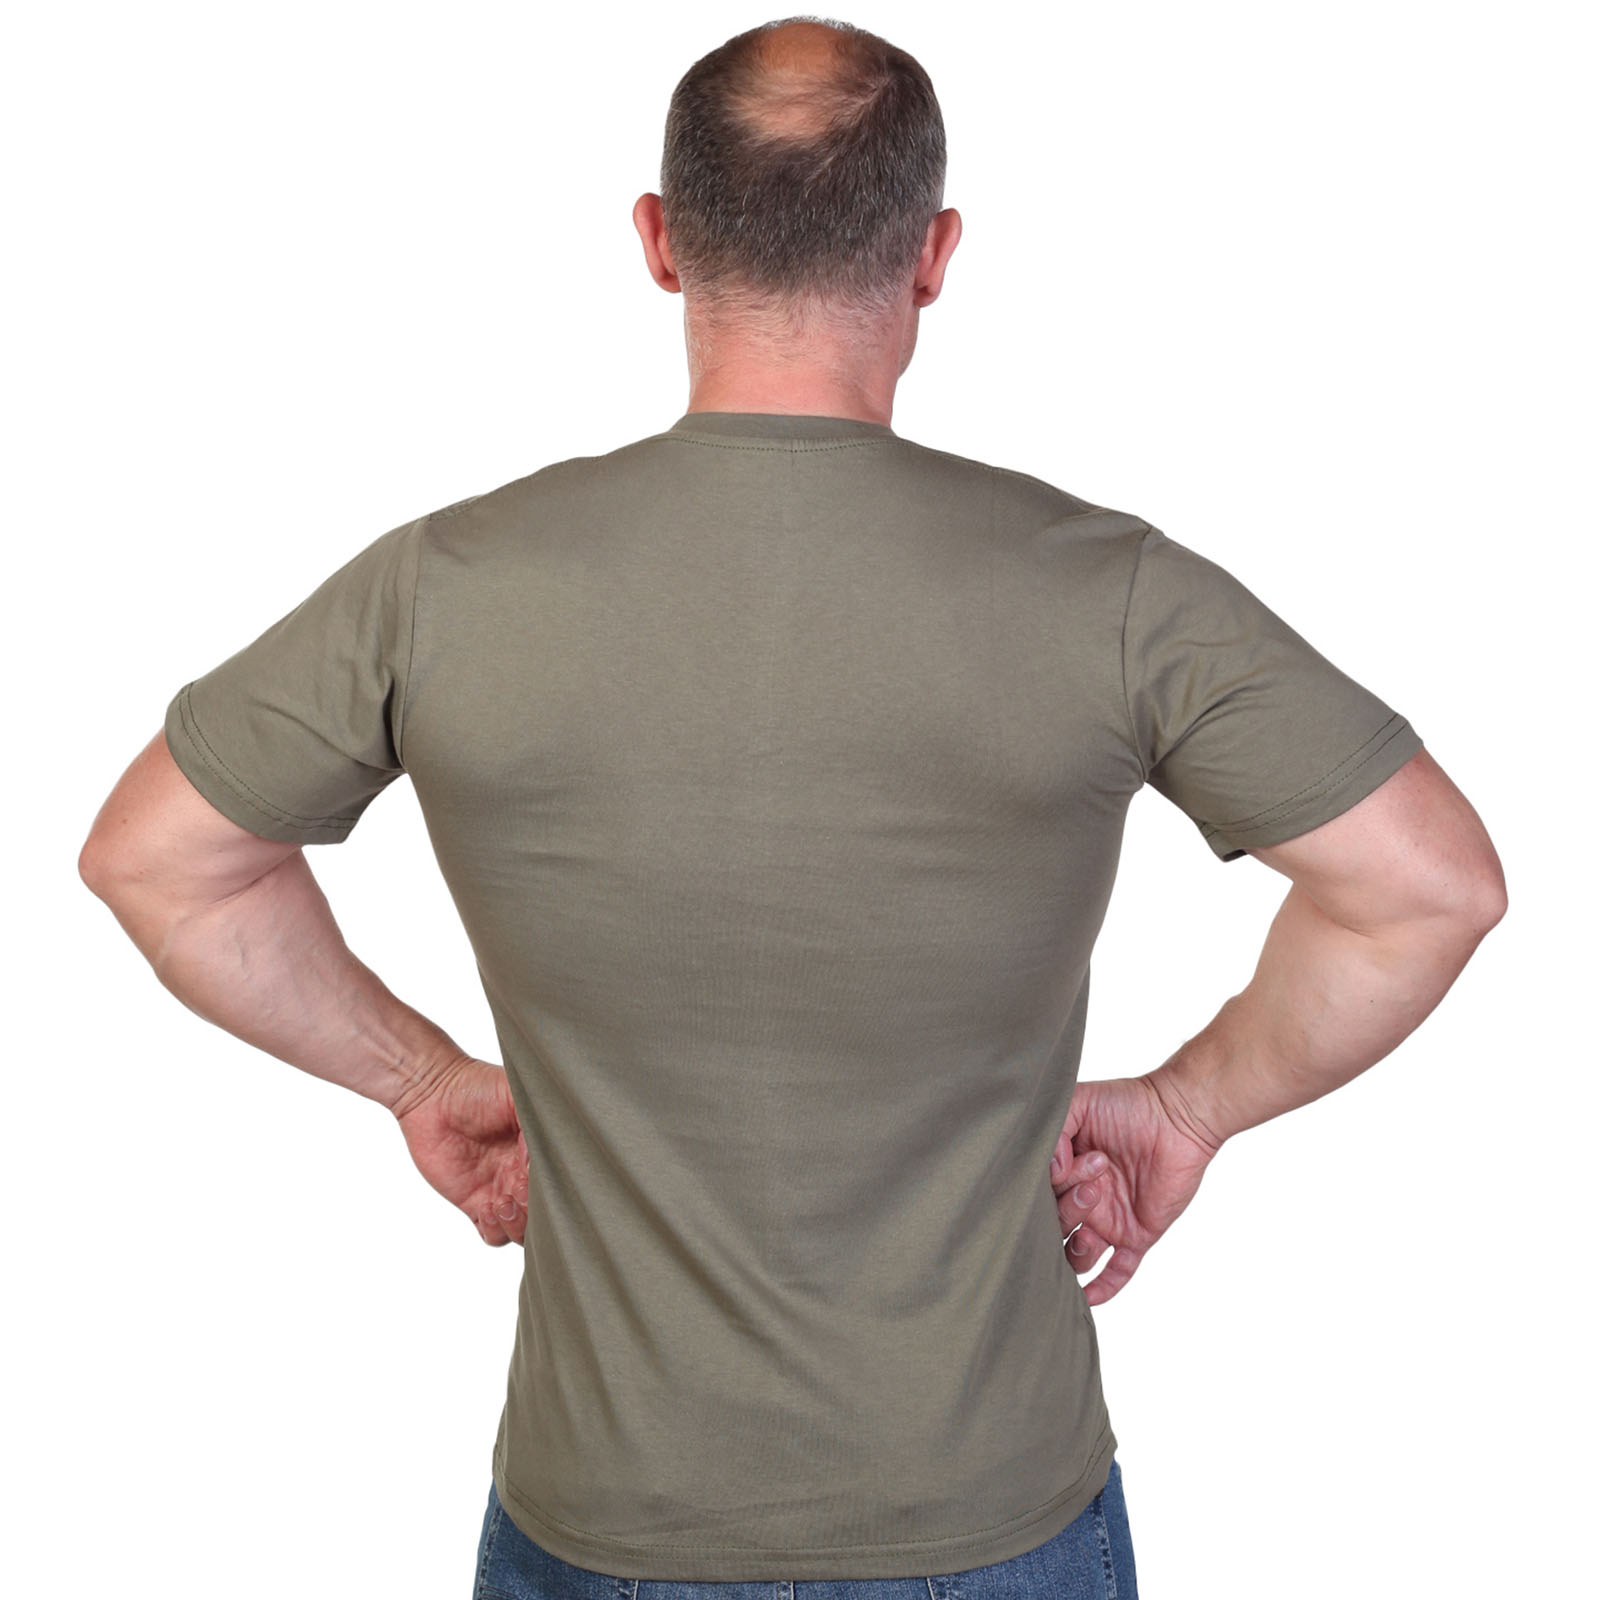 Оливковая футболка с термотрансфером "Войска связи" 